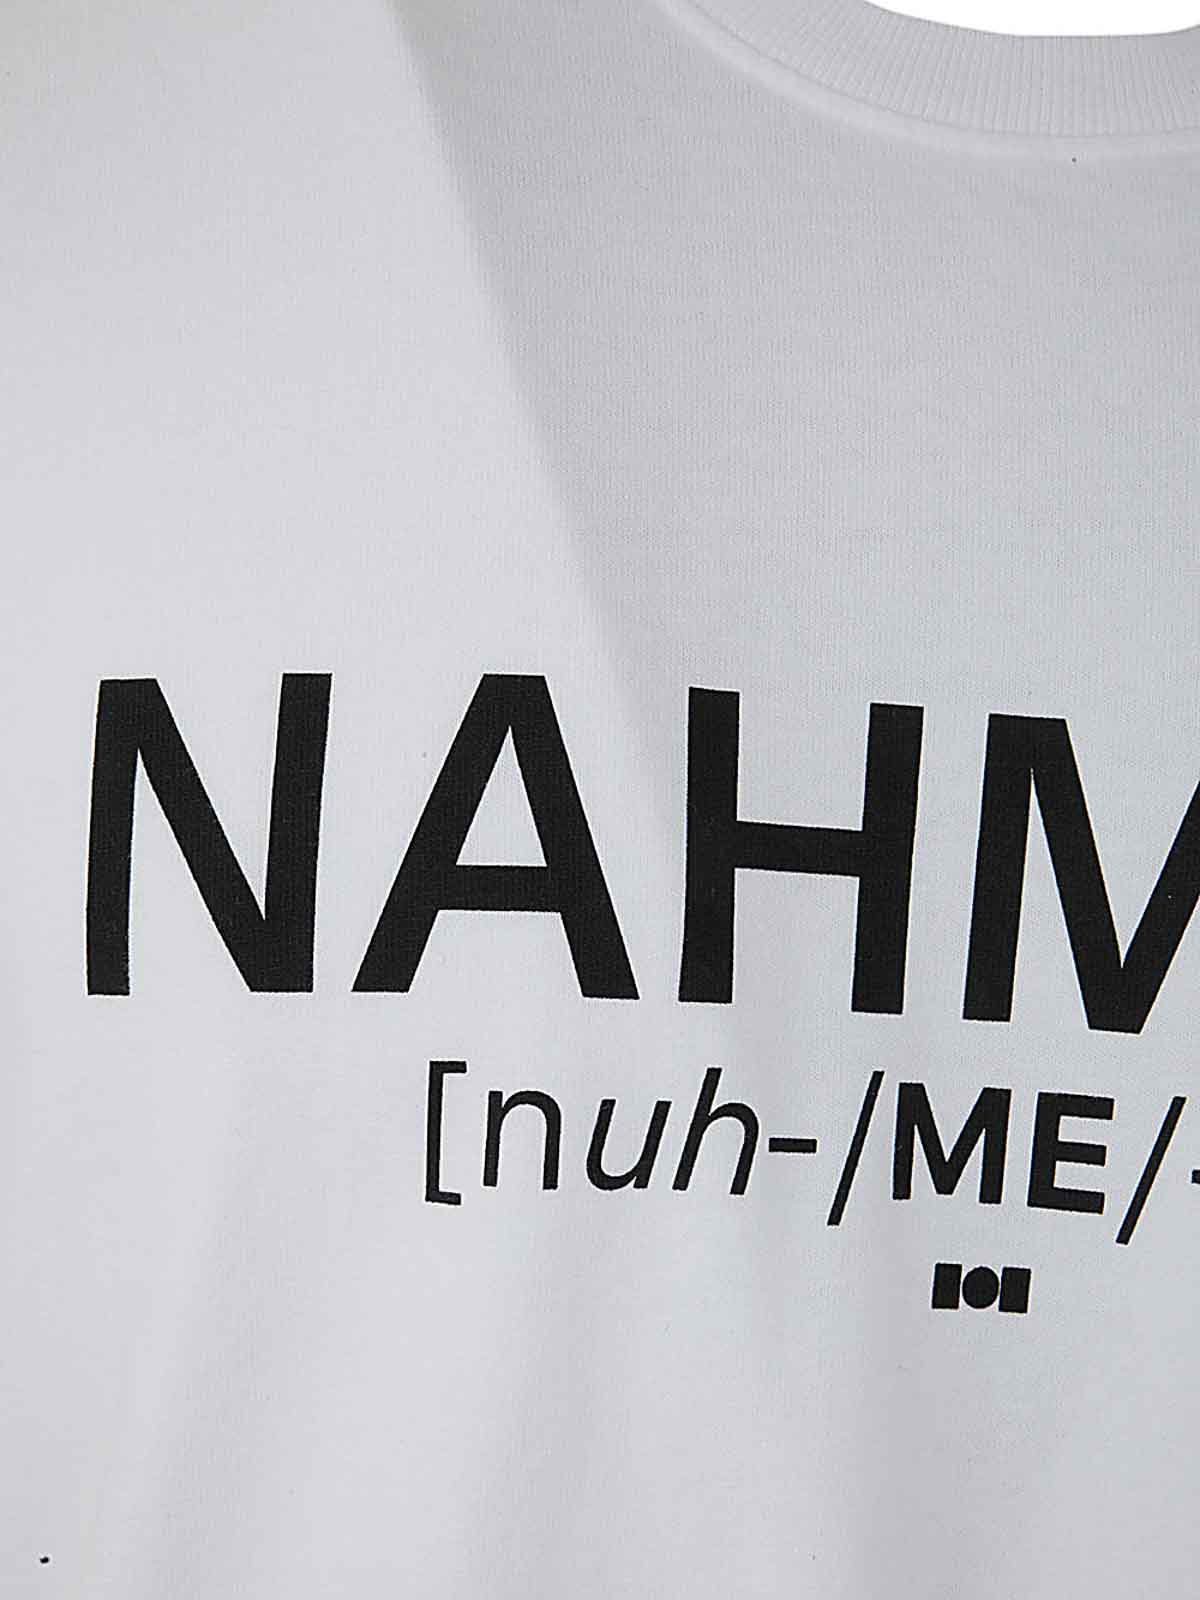 Shop Nahmias Camiseta - Blanco In White